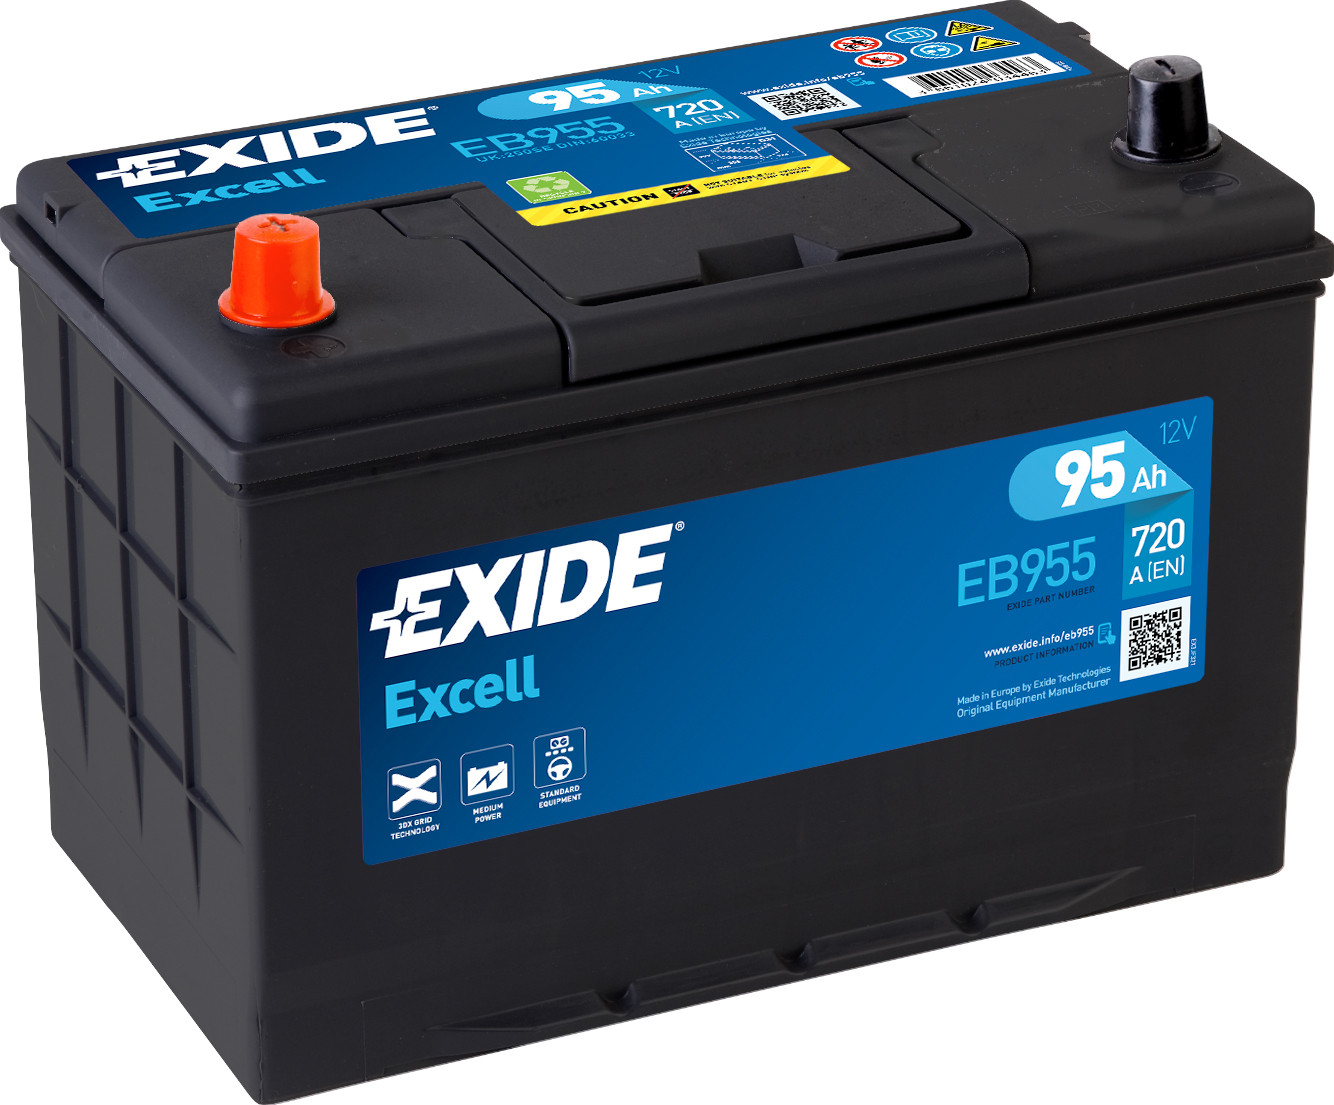 Аккумулятор EXIDE автомобильный EXCELL 95Ah 720A (EN) Кислотный EXIDE EB955